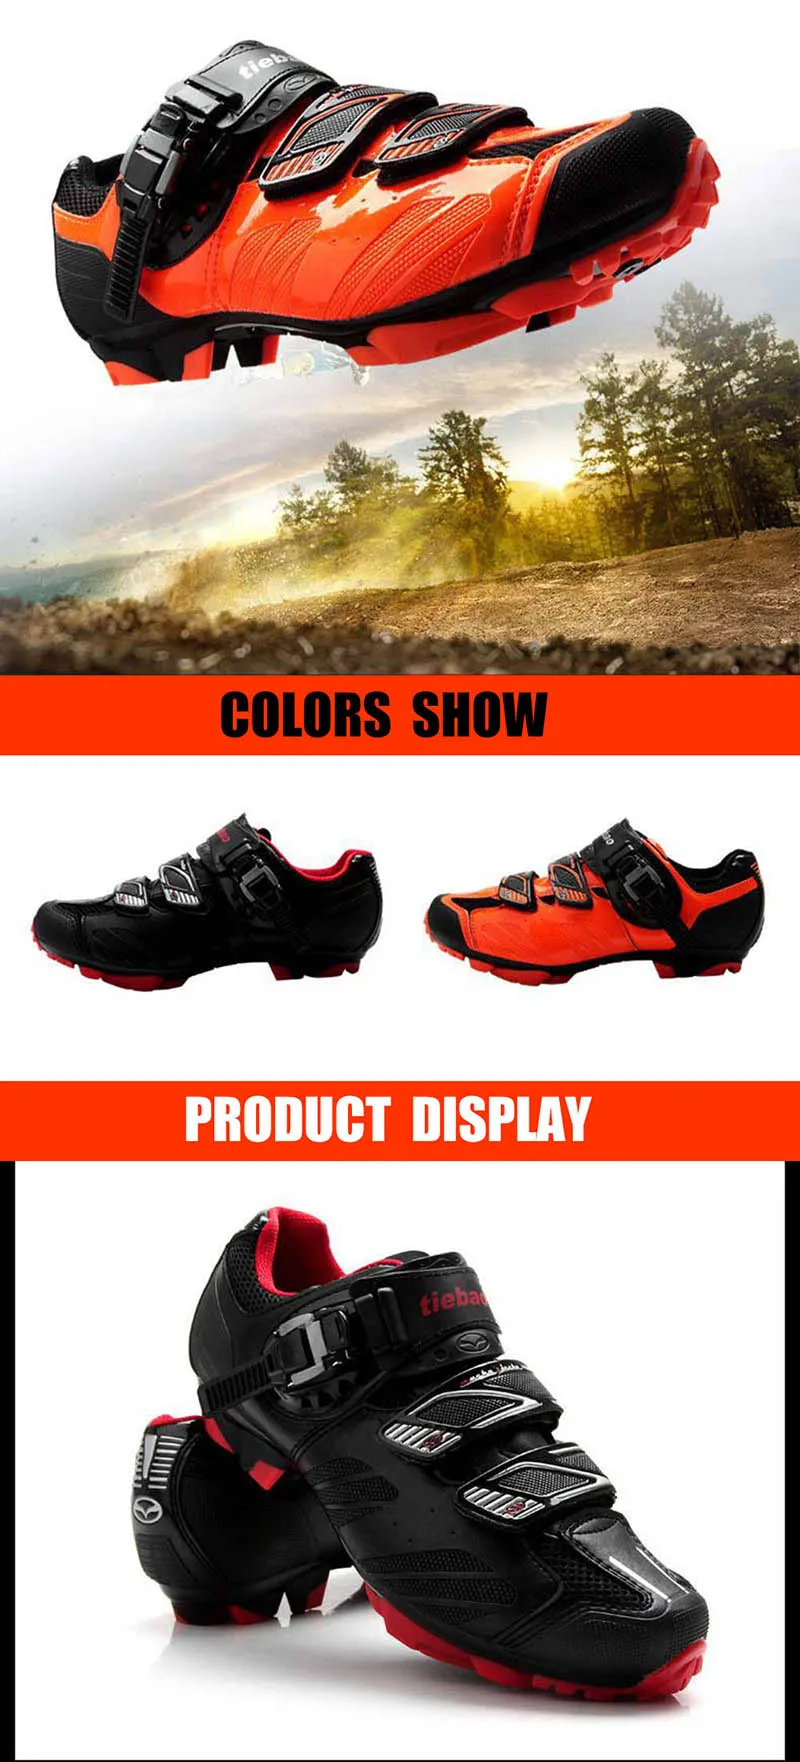 Tiebao sapatilha ciclismo mtb обувь для велоспорта мужские и женские кроссовки для горного велосипеда самозакрывающиеся дышащие суперзвезды обувь для верховой езды